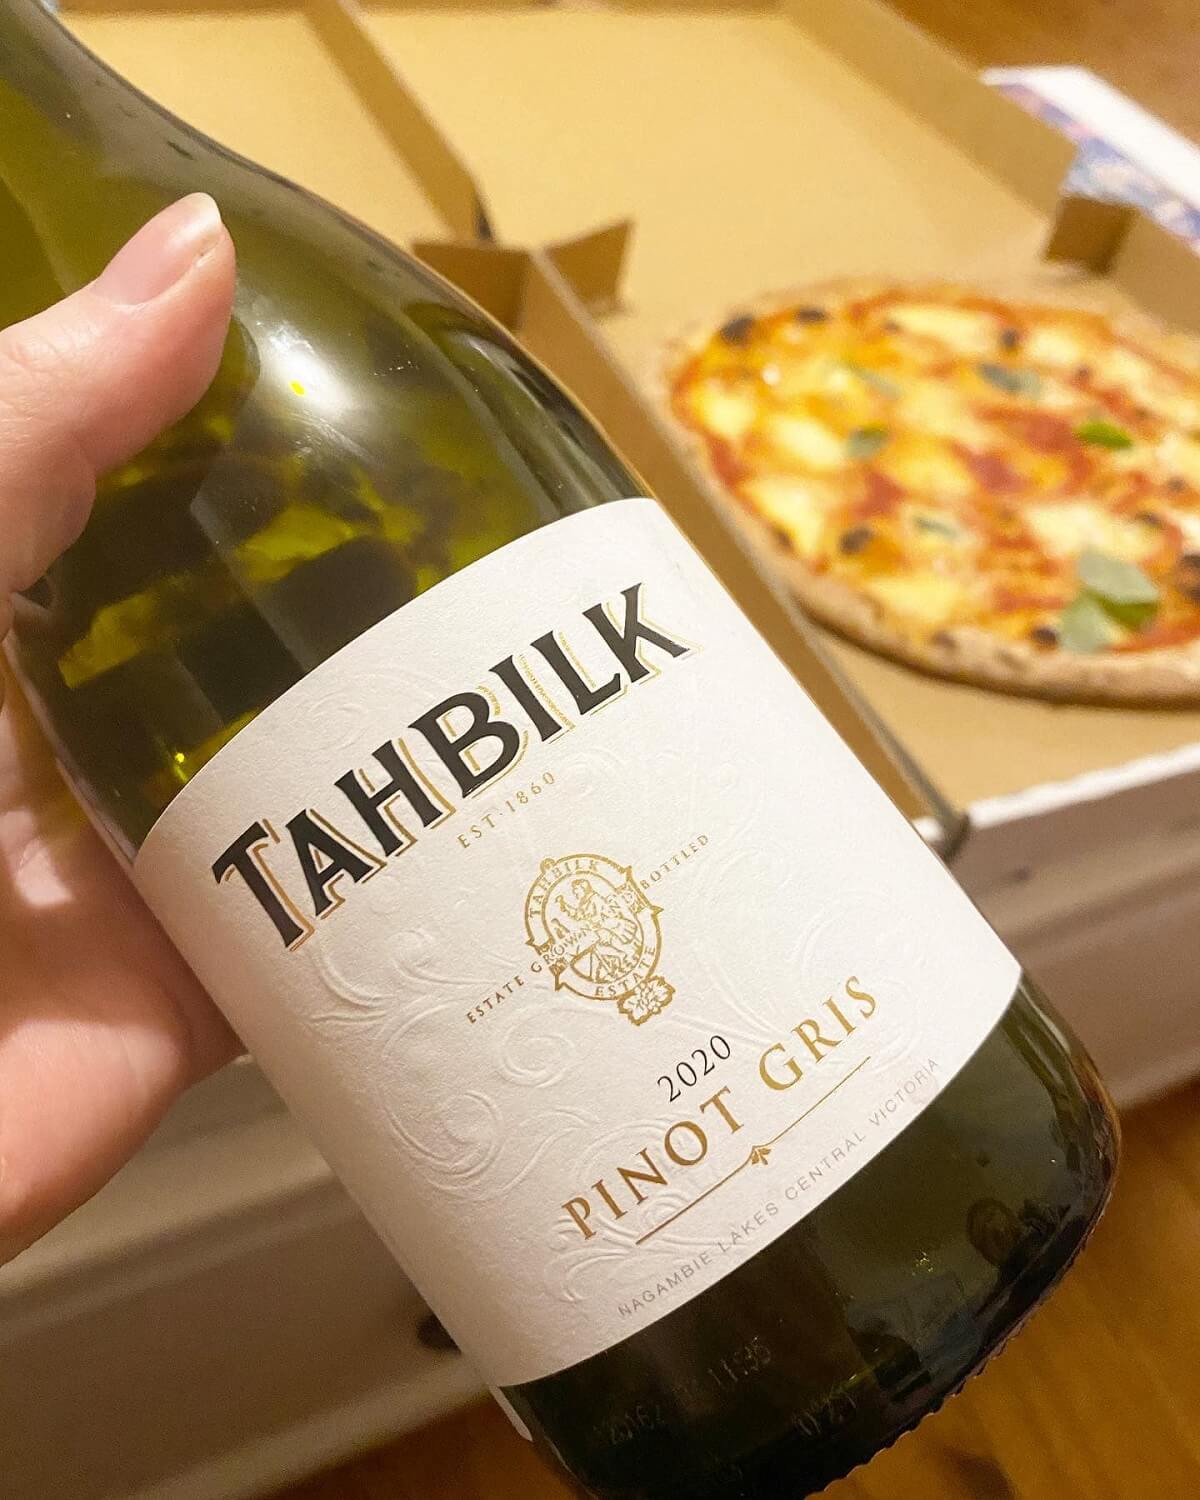 Tahbilk 2020 & 2018 Pinot Gris